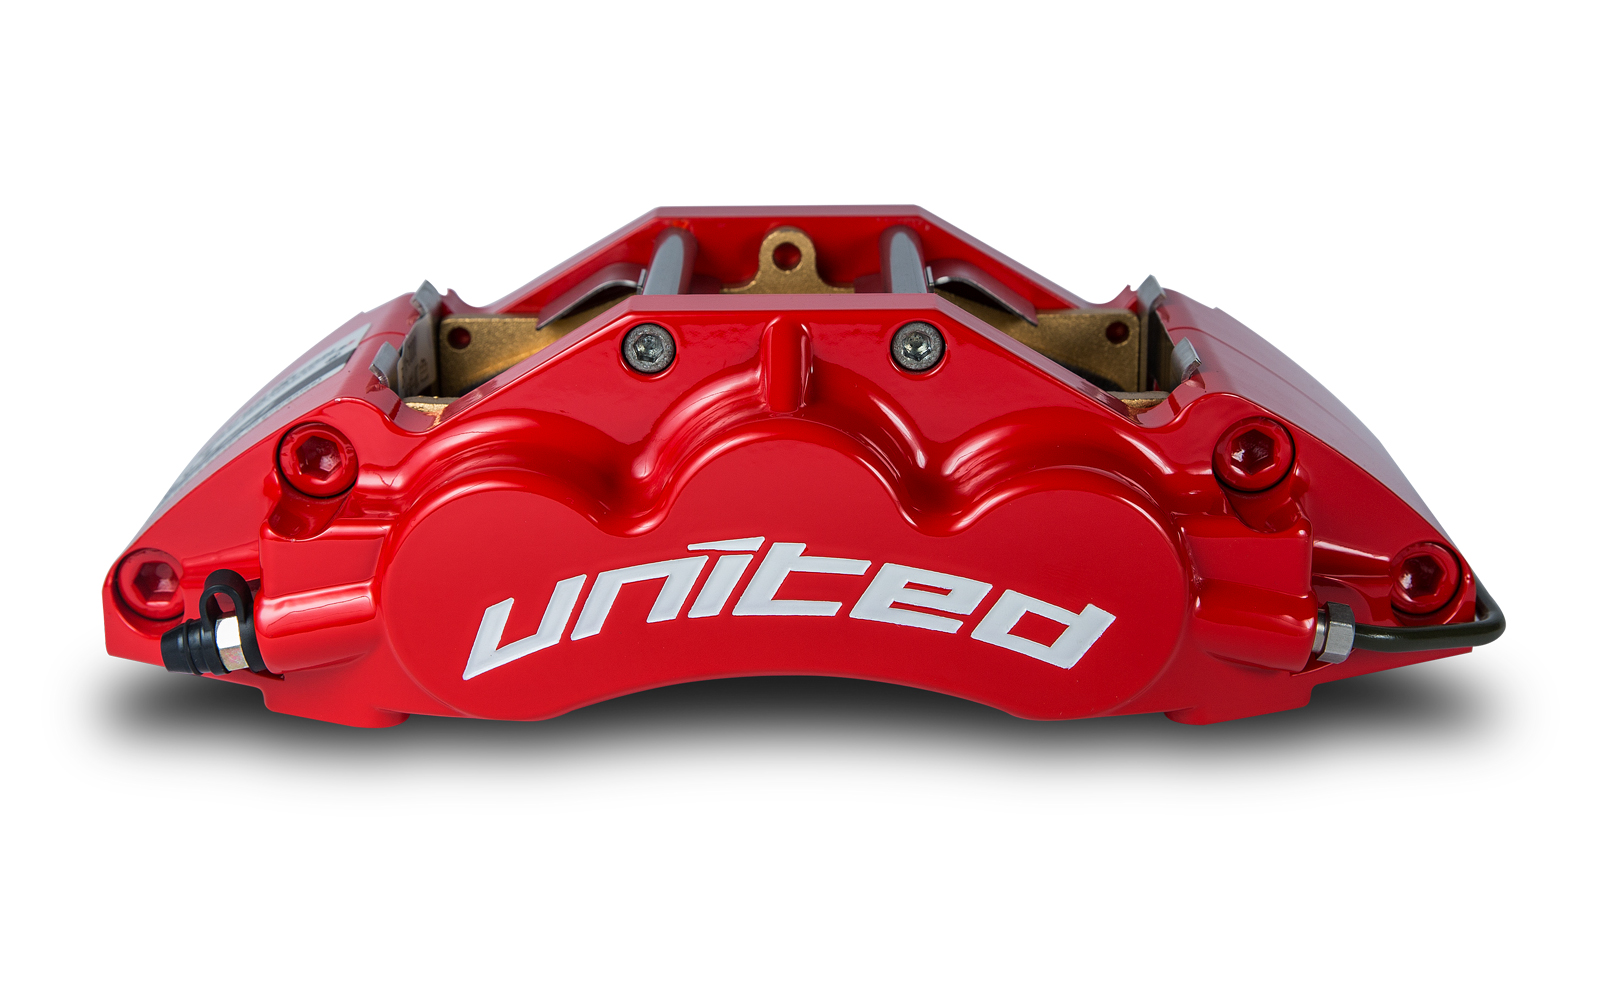 UNITED 高品質鍛造卡鉗-前中六活塞 | 聯結汽車有限公司 T&UNITED Racing.